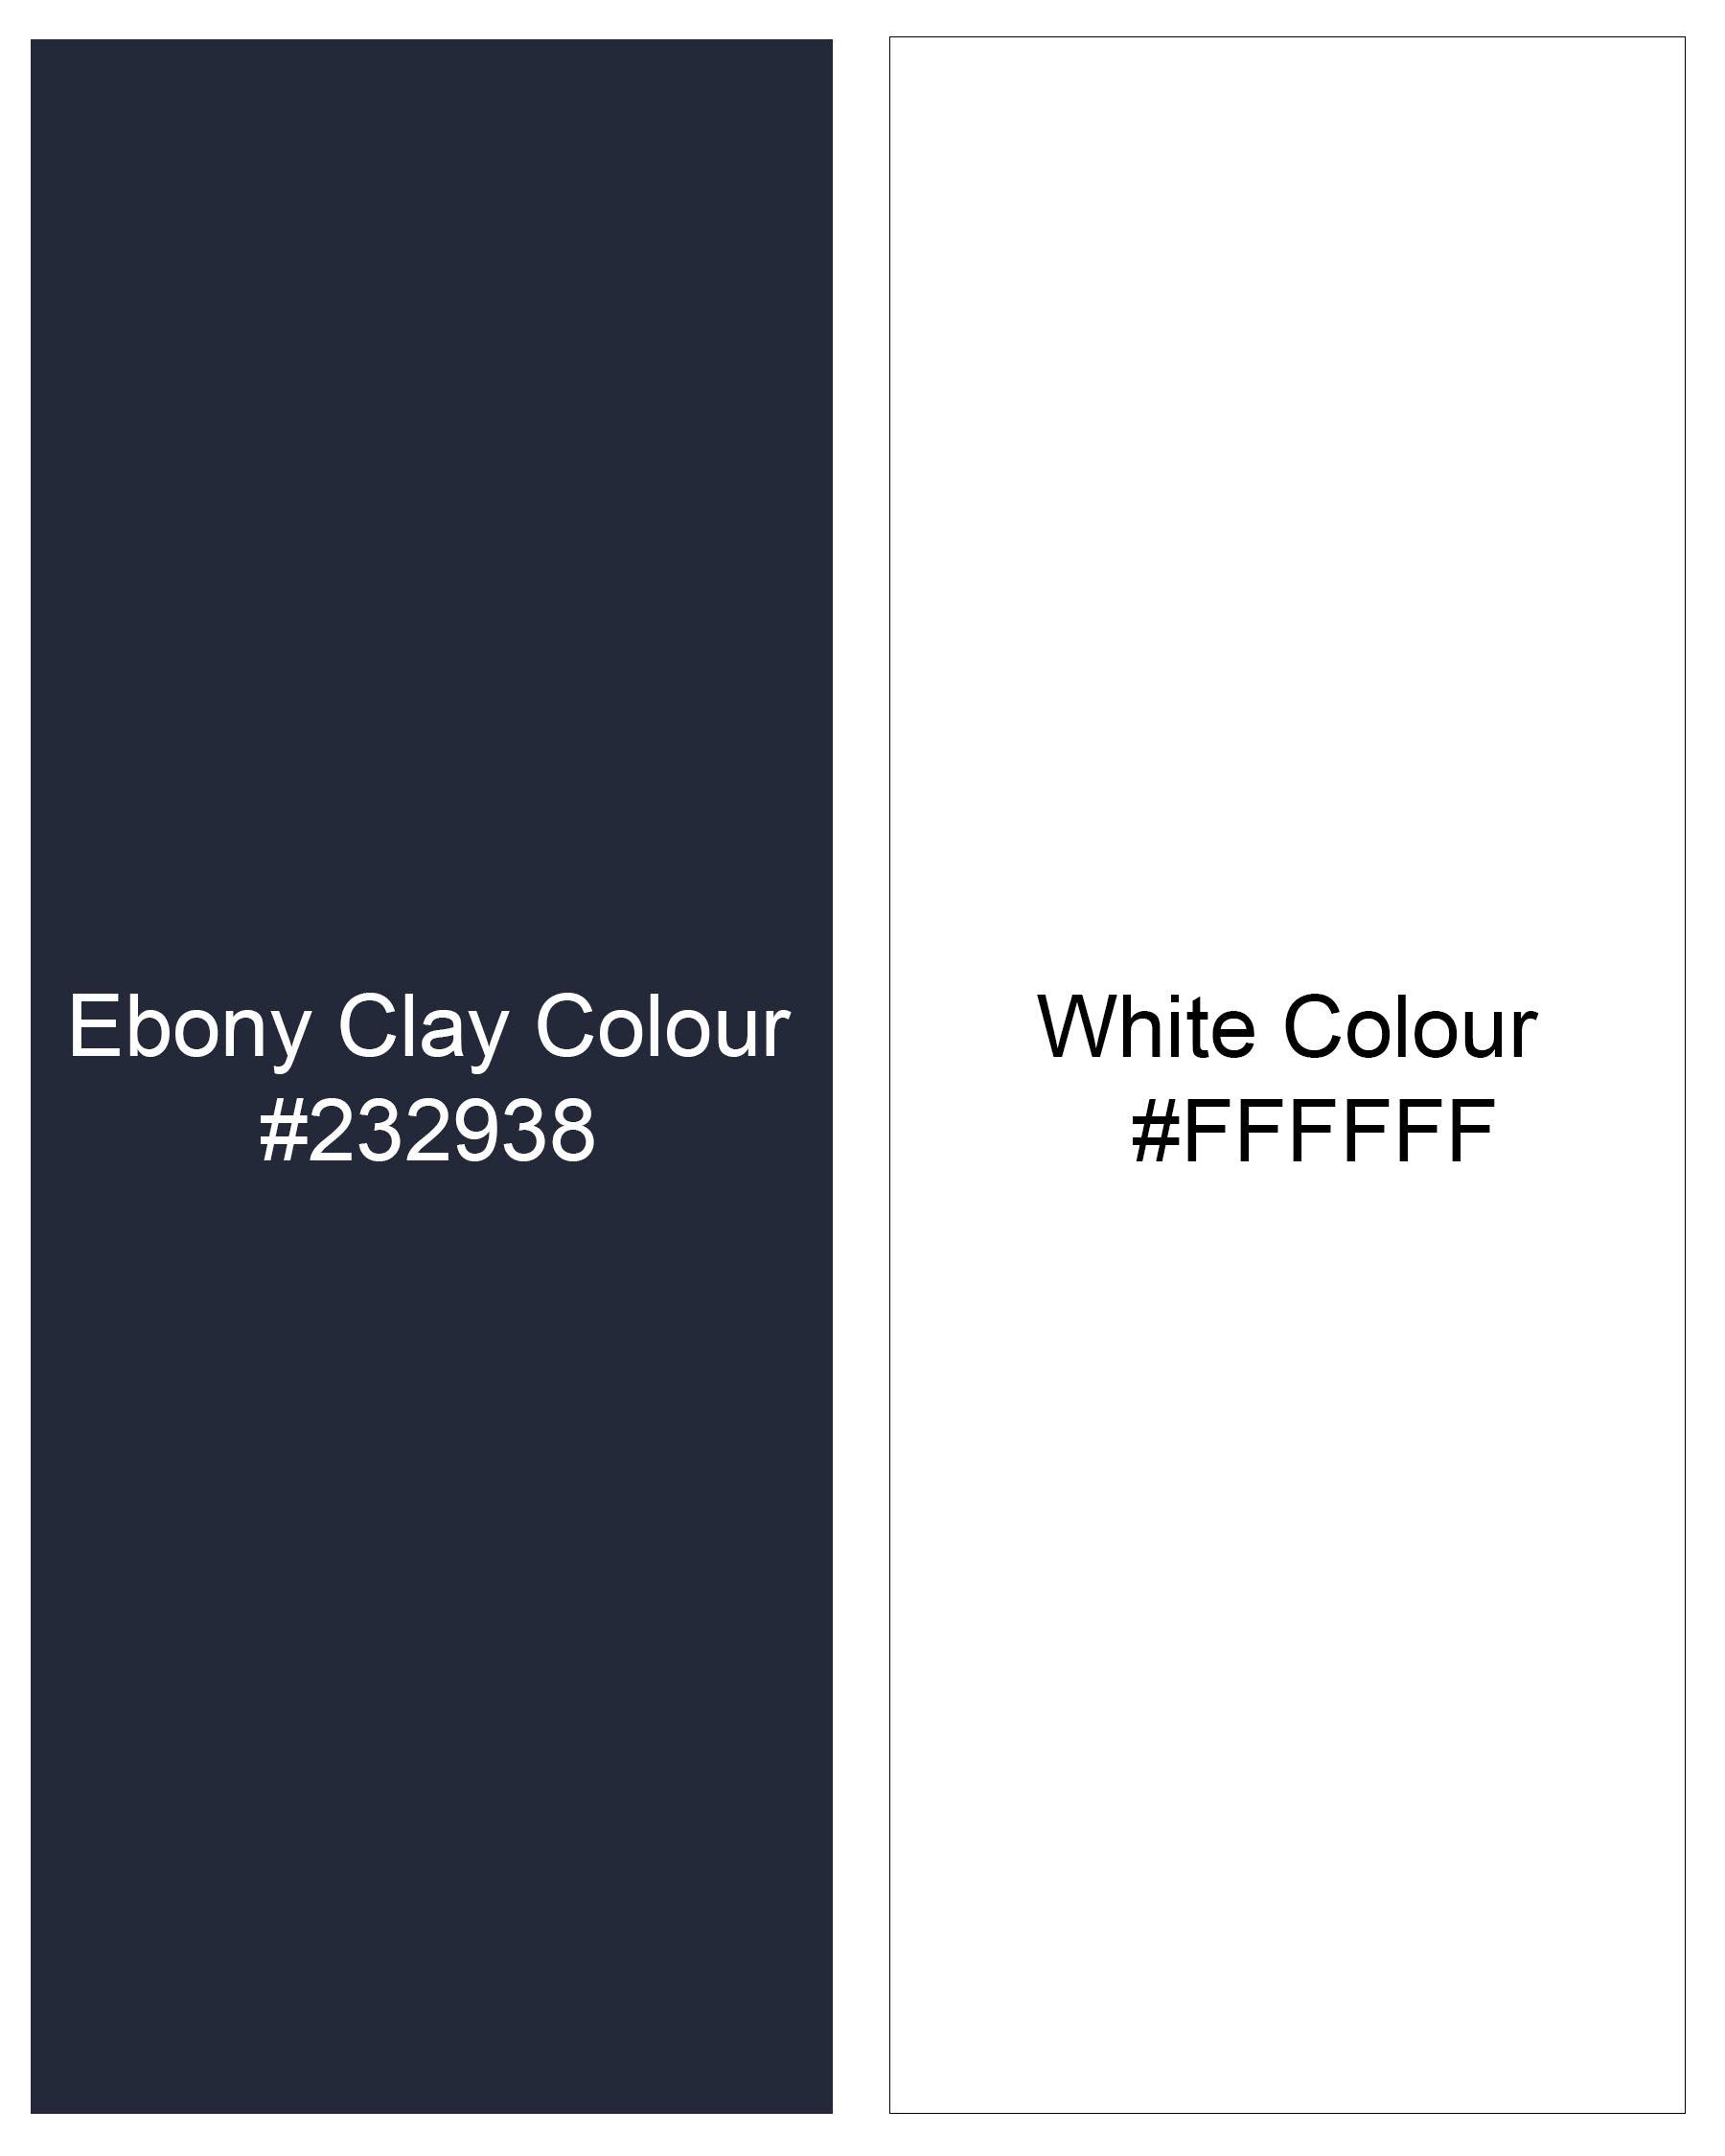 Ebony Clay Blue Floral Printed Dobby Textured Premium Giza Cotton Kurta Shirt 8004-KS-38,8004-KS-H-38,8004-KS-39,8004-KS-H-39,8004-KS-40,8004-KS-H-40,8004-KS-42,8004-KS-H-42,8004-KS-44,8004-KS-H-44,8004-KS-46,8004-KS-H-46,8004-KS-48,8004-KS-H-48,8004-KS-50,8004-KS-H-50,8004-KS-52,8004-KS-H-52